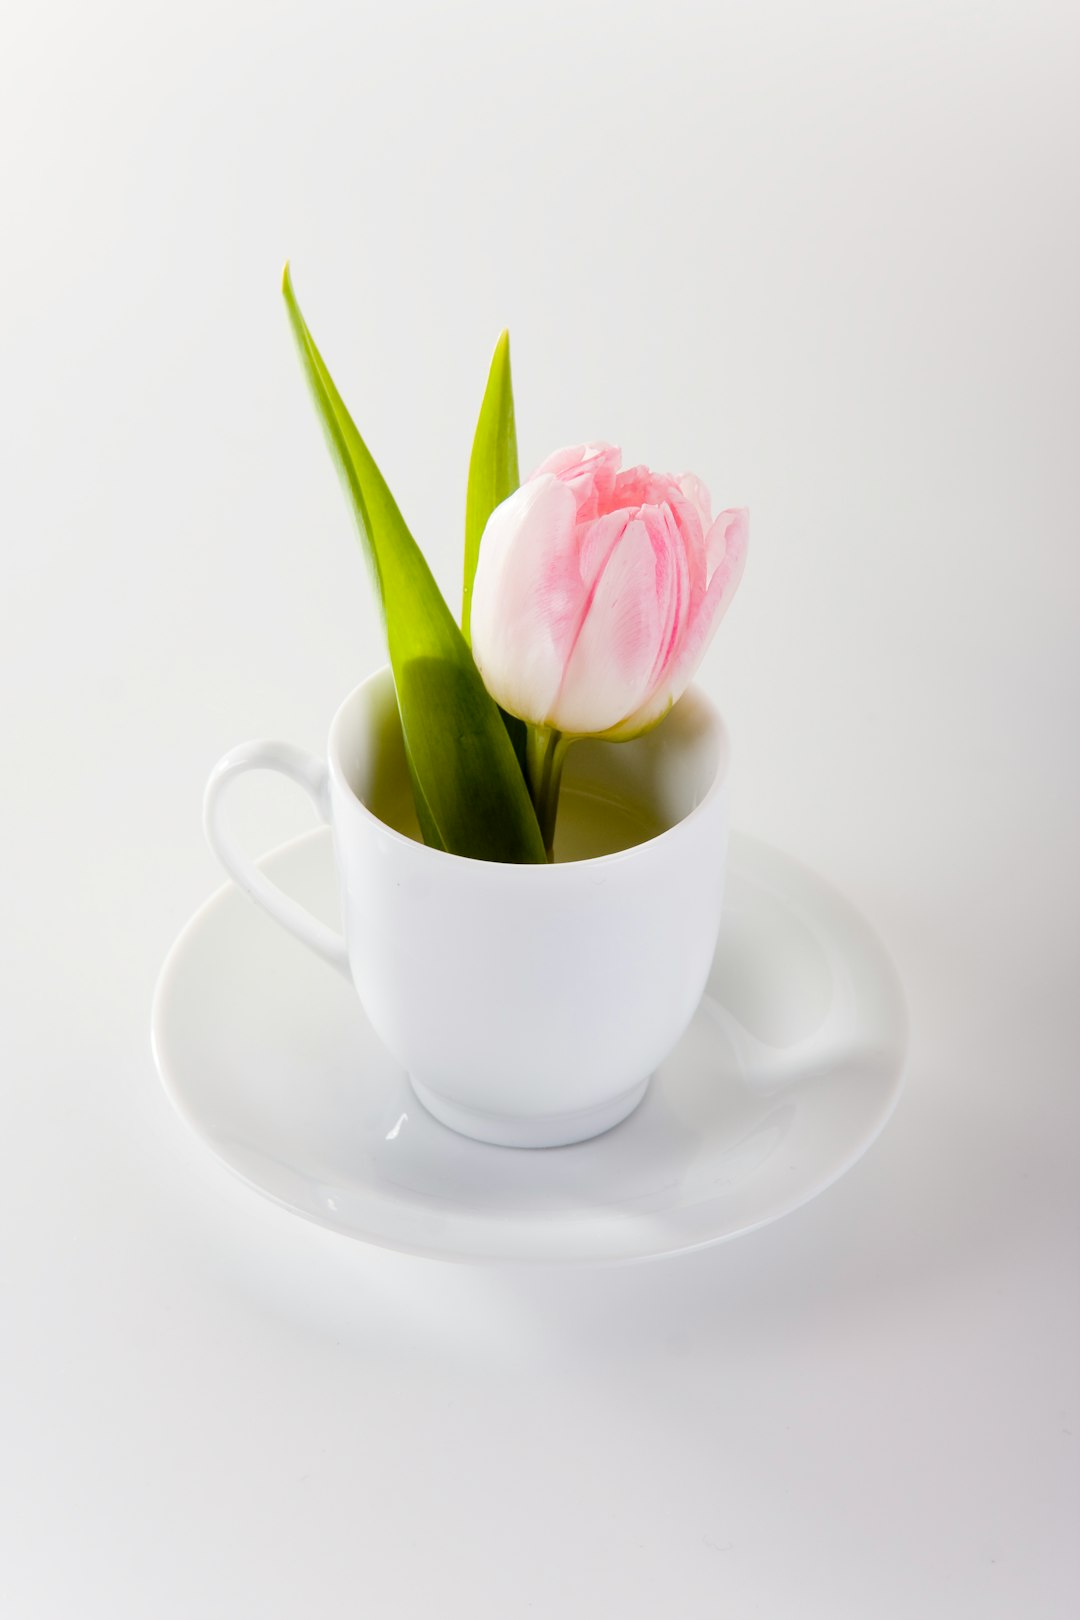 pink rose on white ceramic teacup